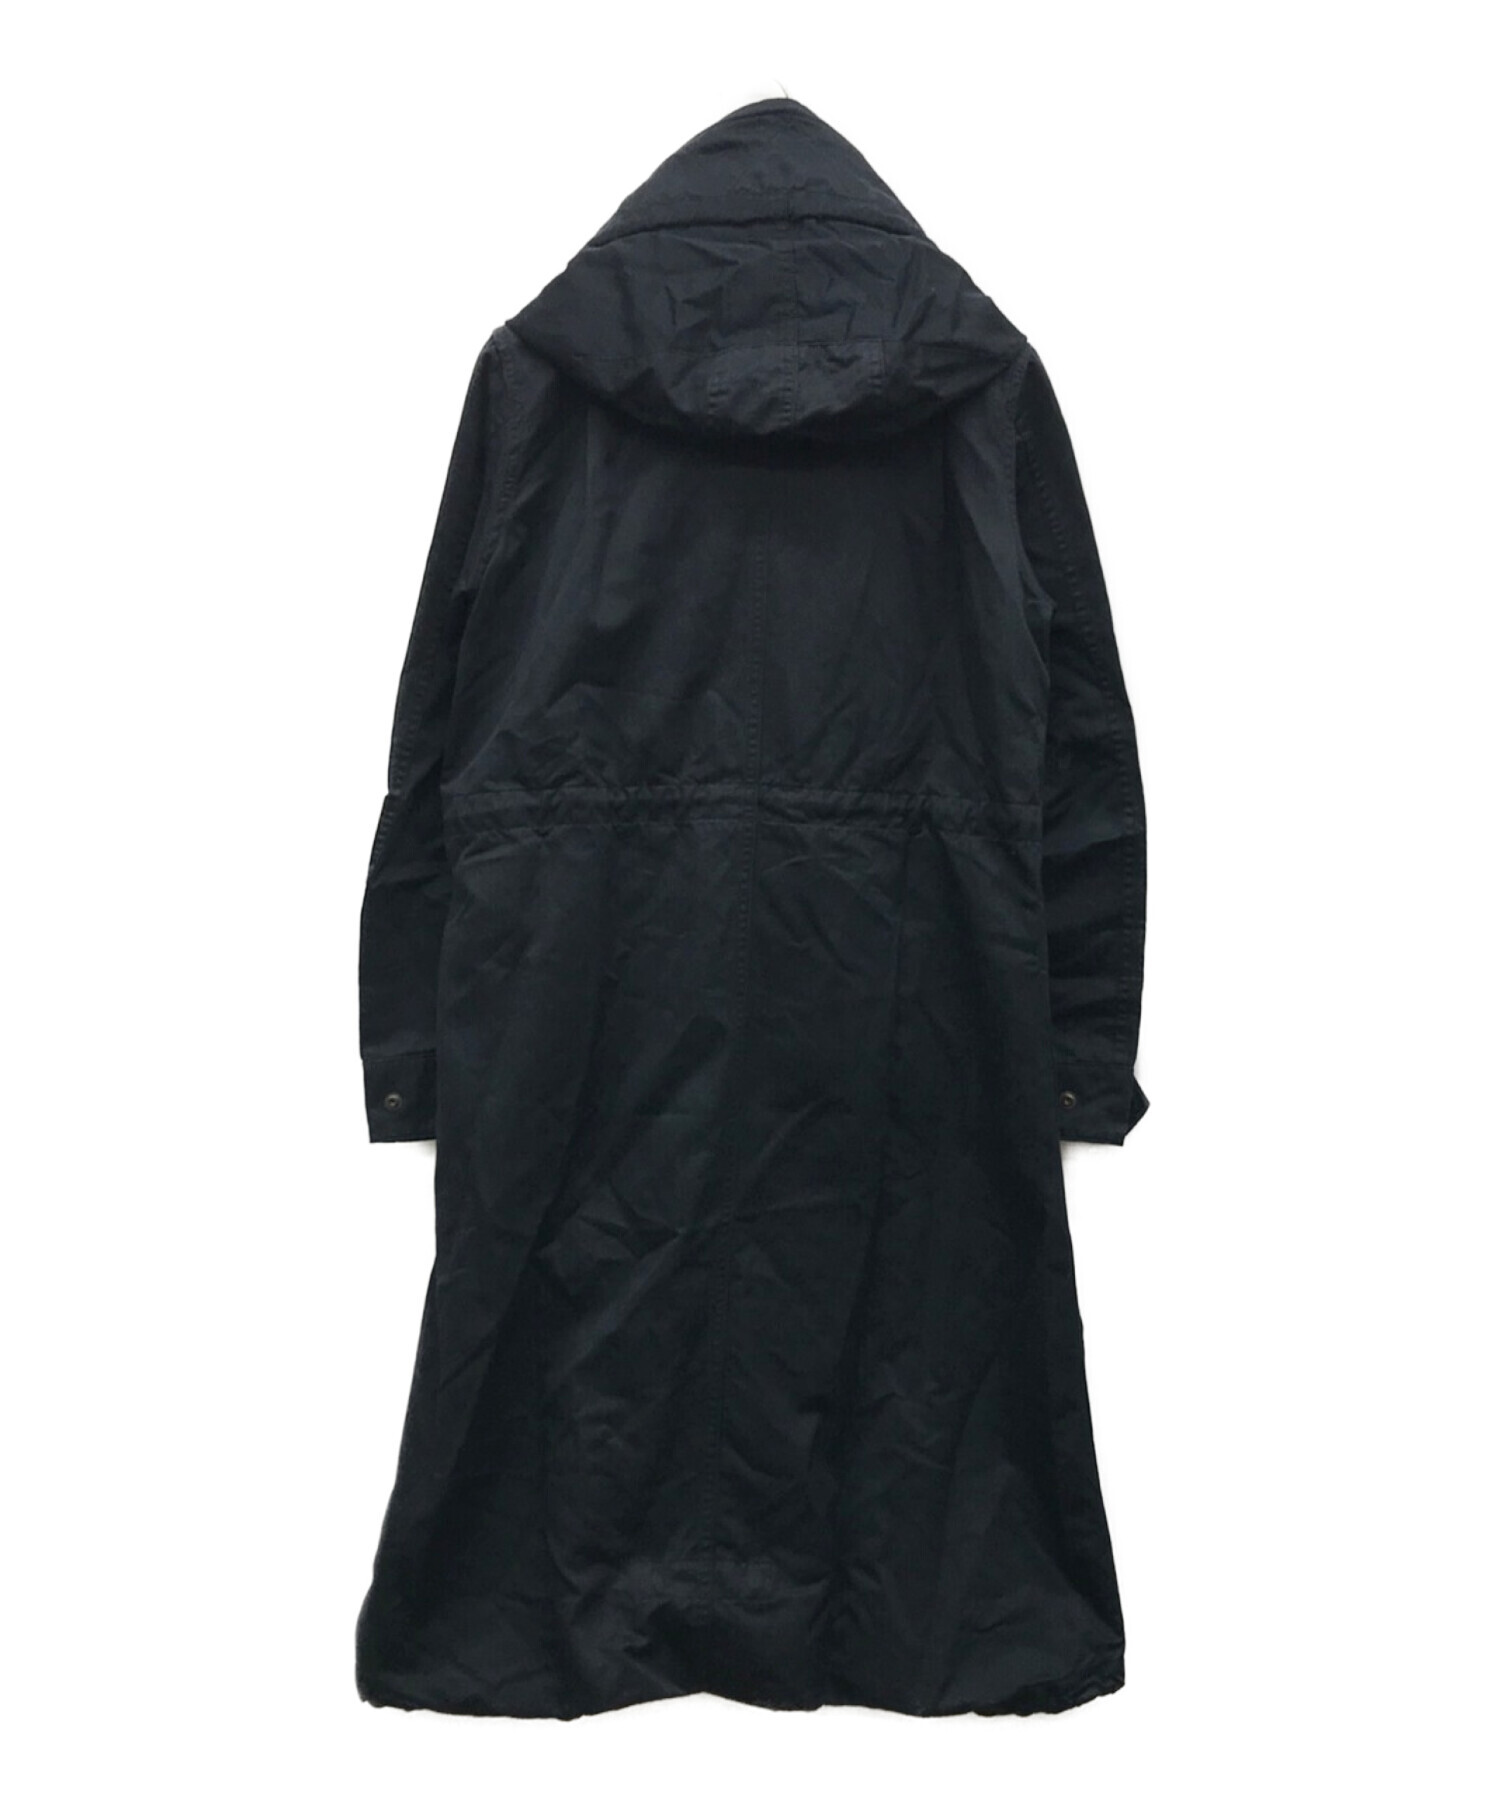 ザリラクス モッズコート ブラック36サイズ 海外最新 - ジャケット 